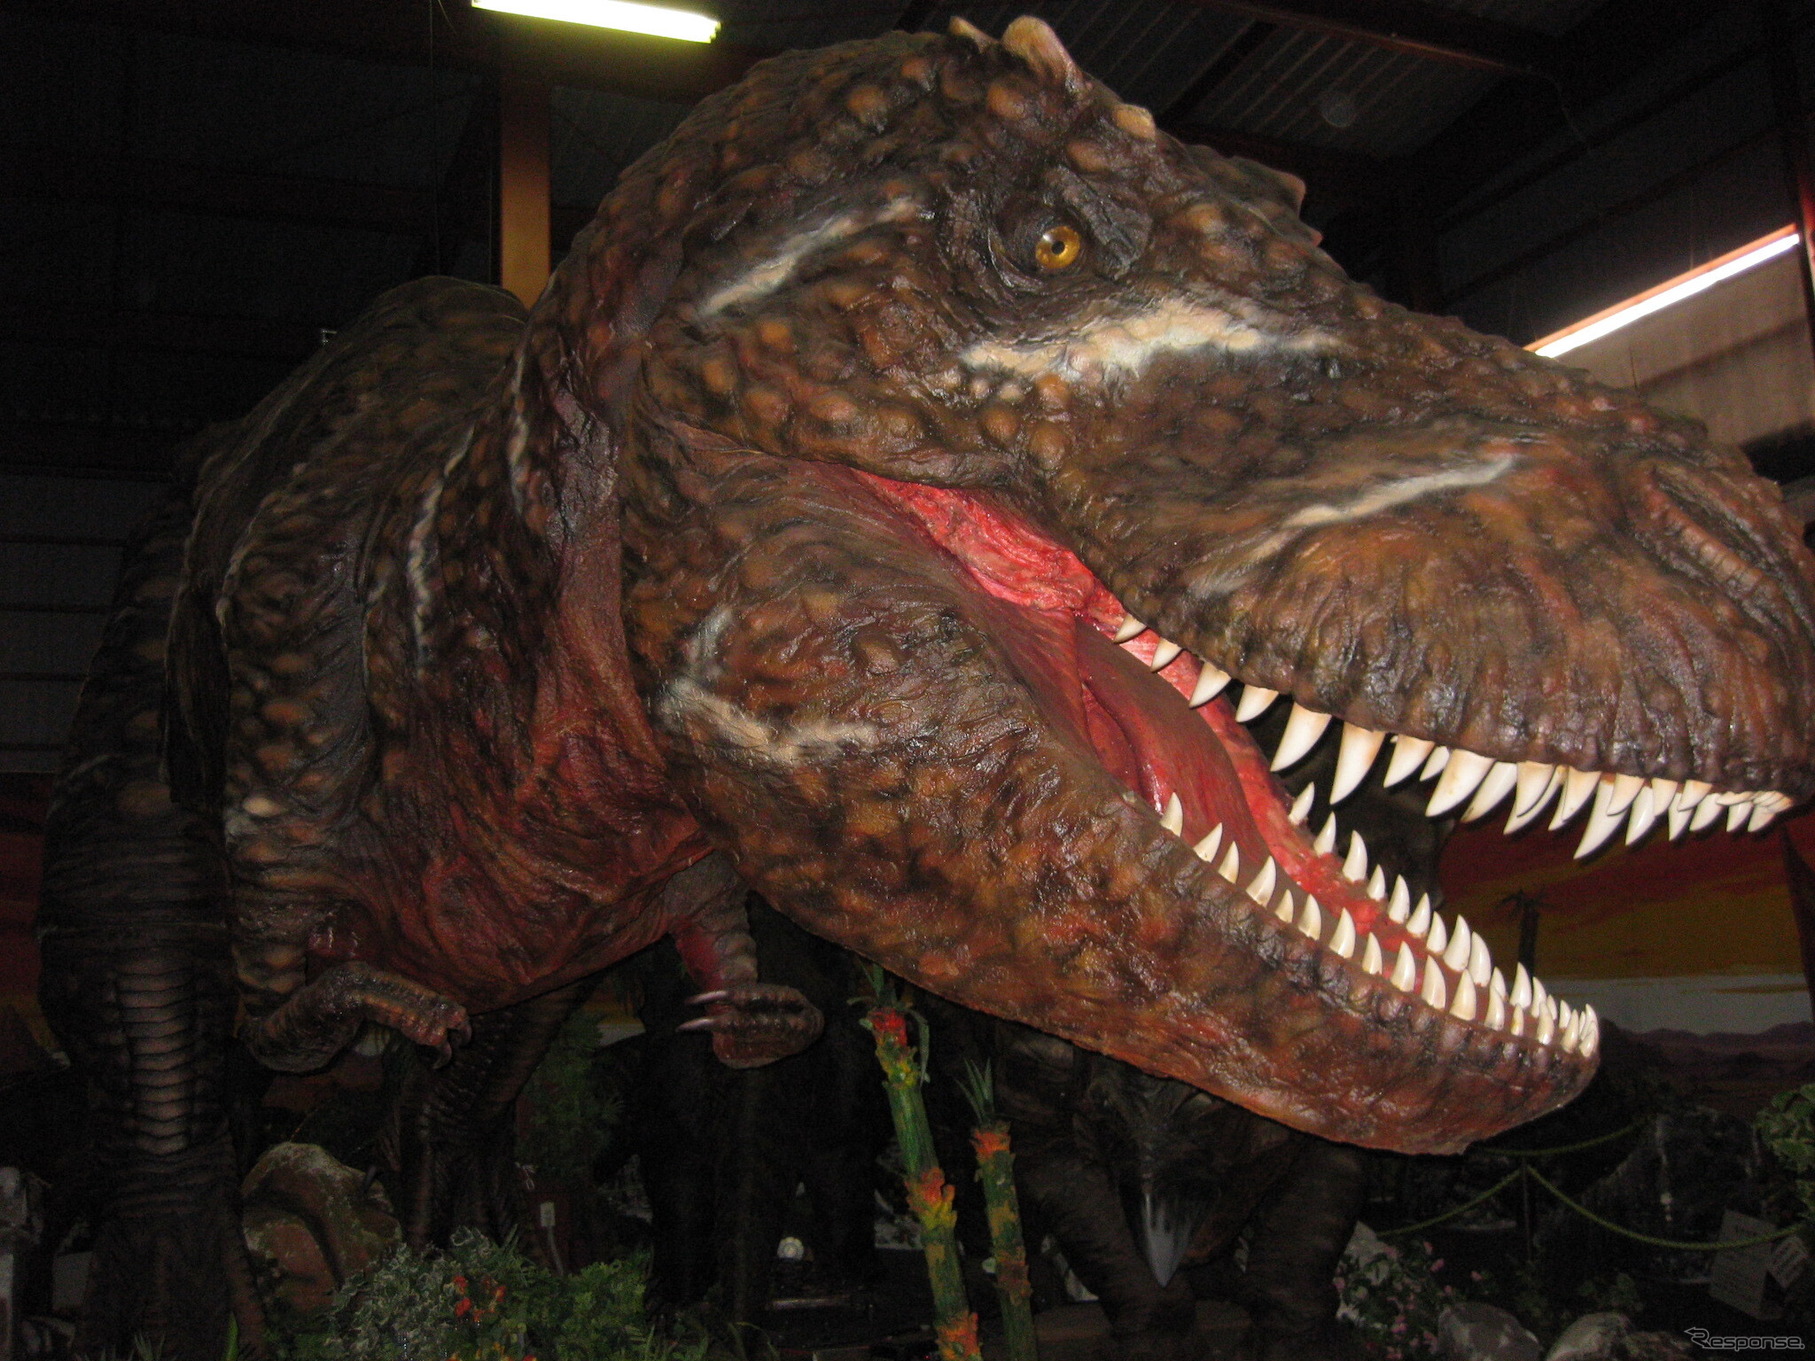 全長15mの超巨大ティラノサウルスが大迫力で君に襲い掛かる!?